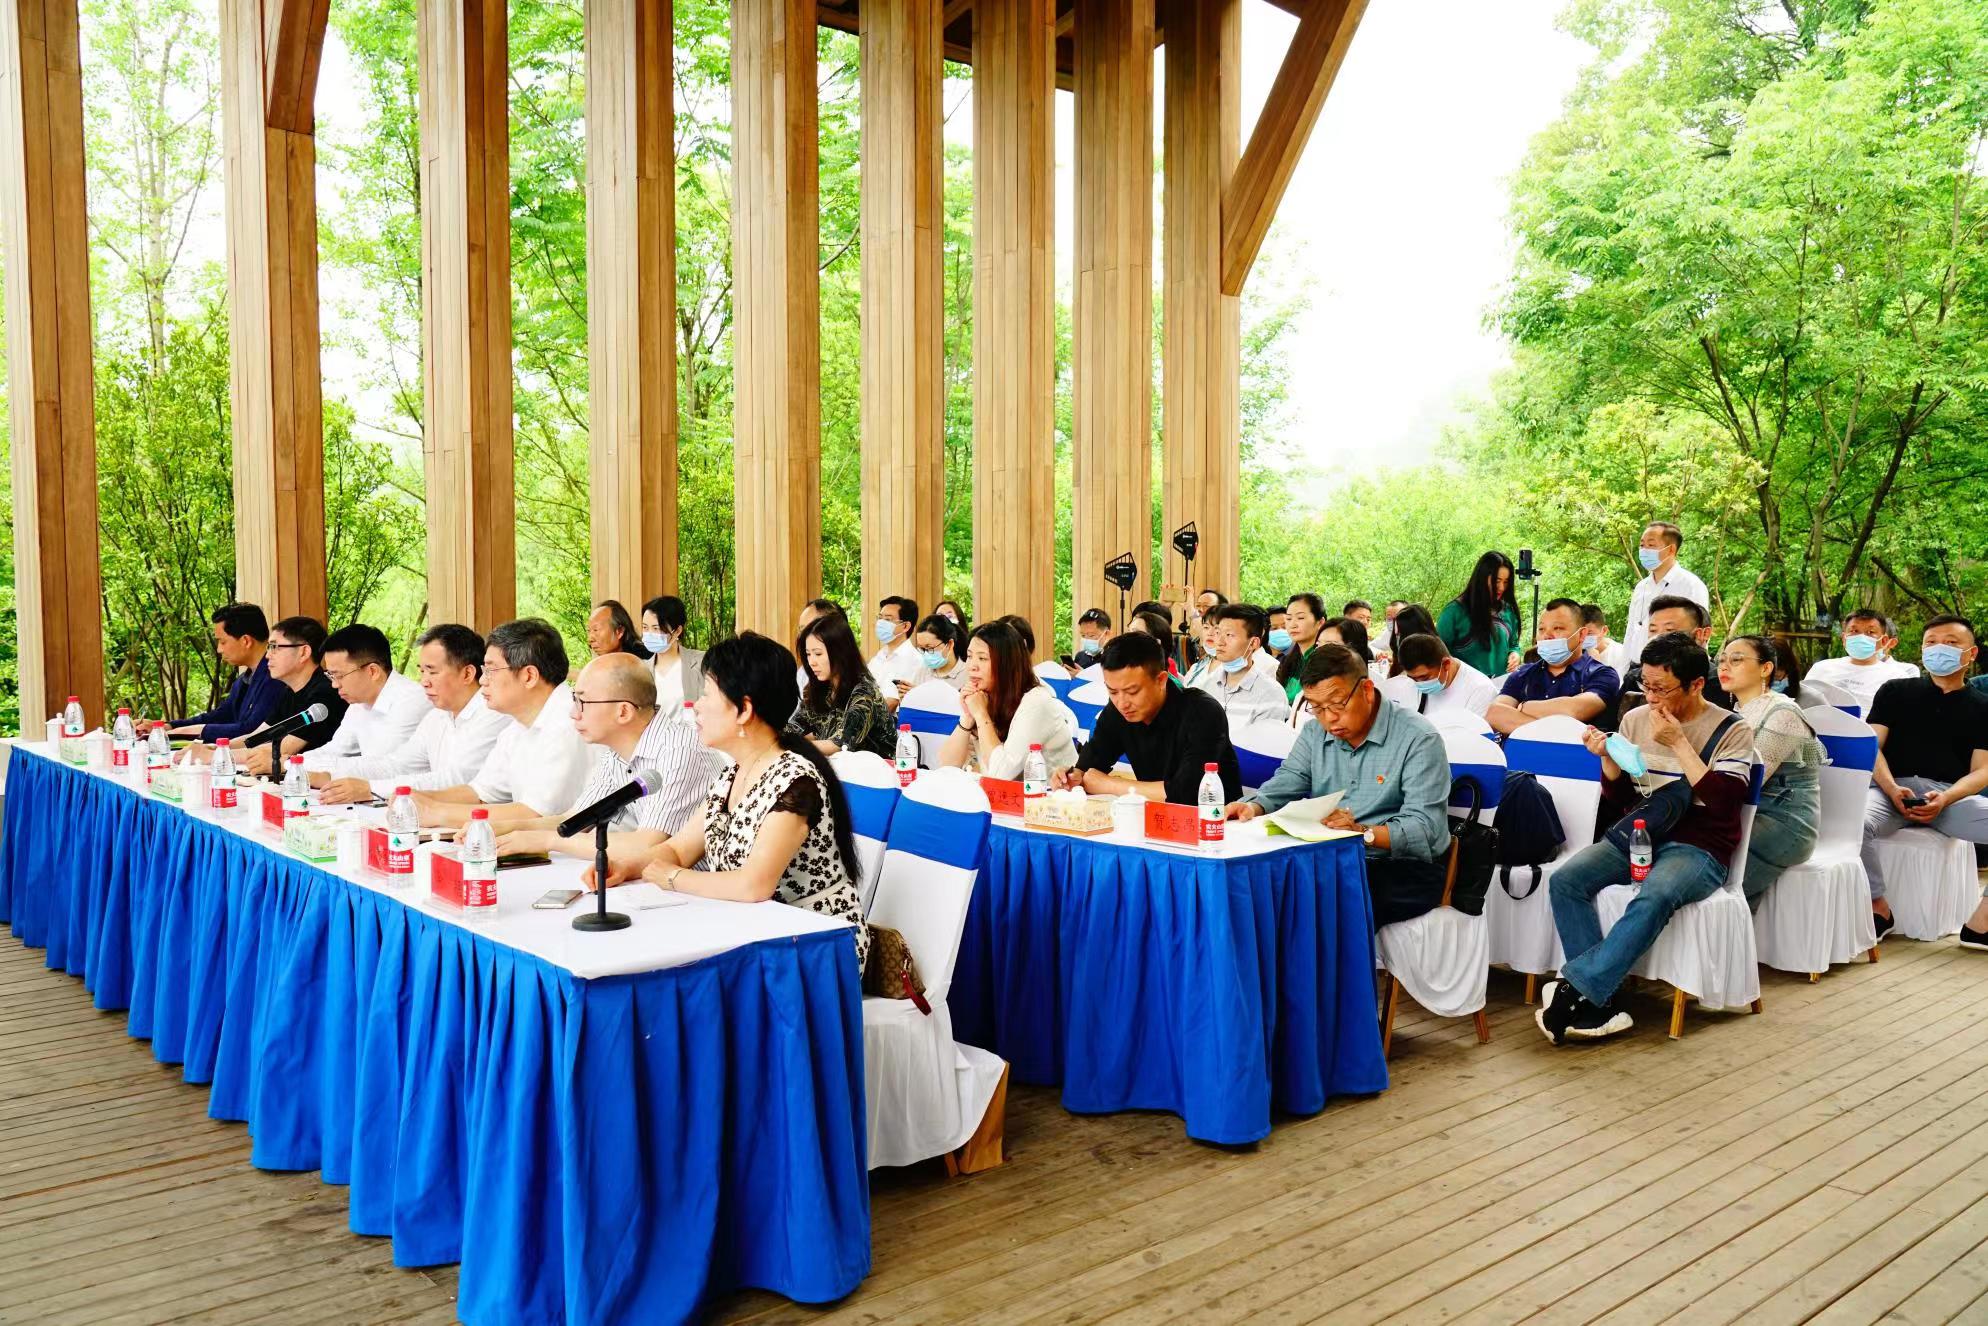 报告文学《新山乡巨变》作品研讨会在益阳清溪村举办